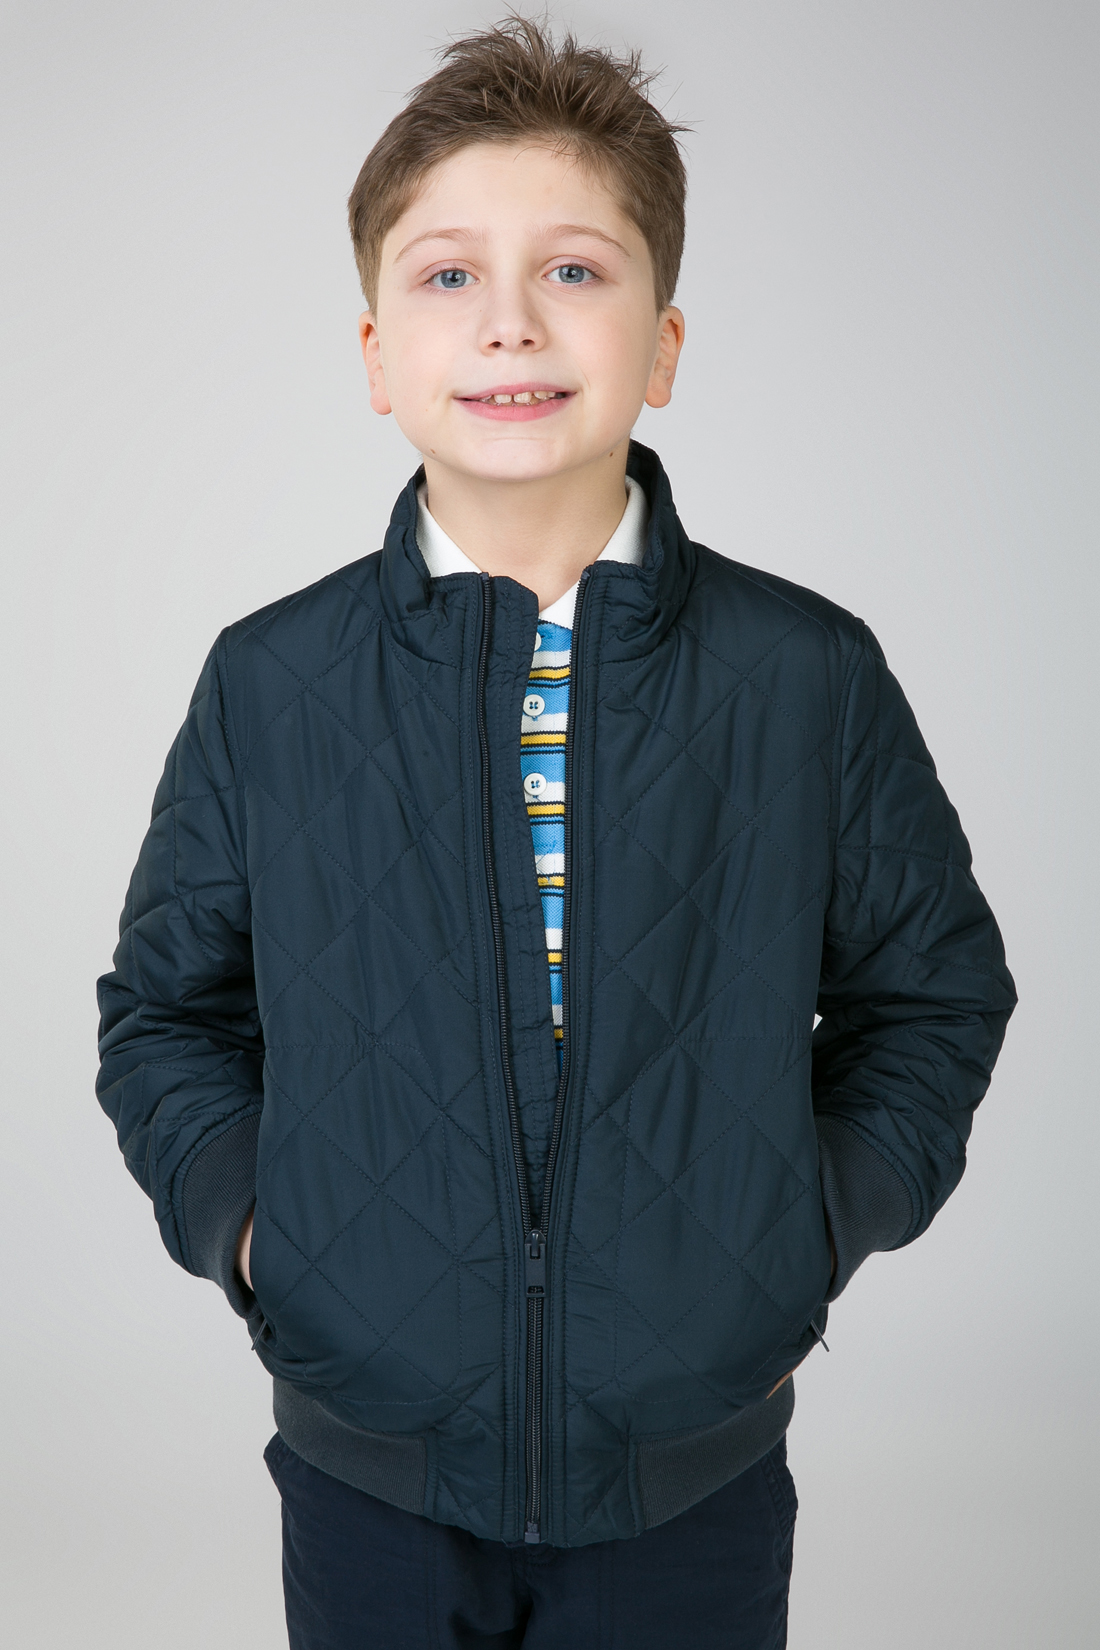 Куртка для мальчика (арт. baon BJ538005), размер 134-140, цвет синий Куртка для мальчика (арт. baon BJ538005) - фото 1